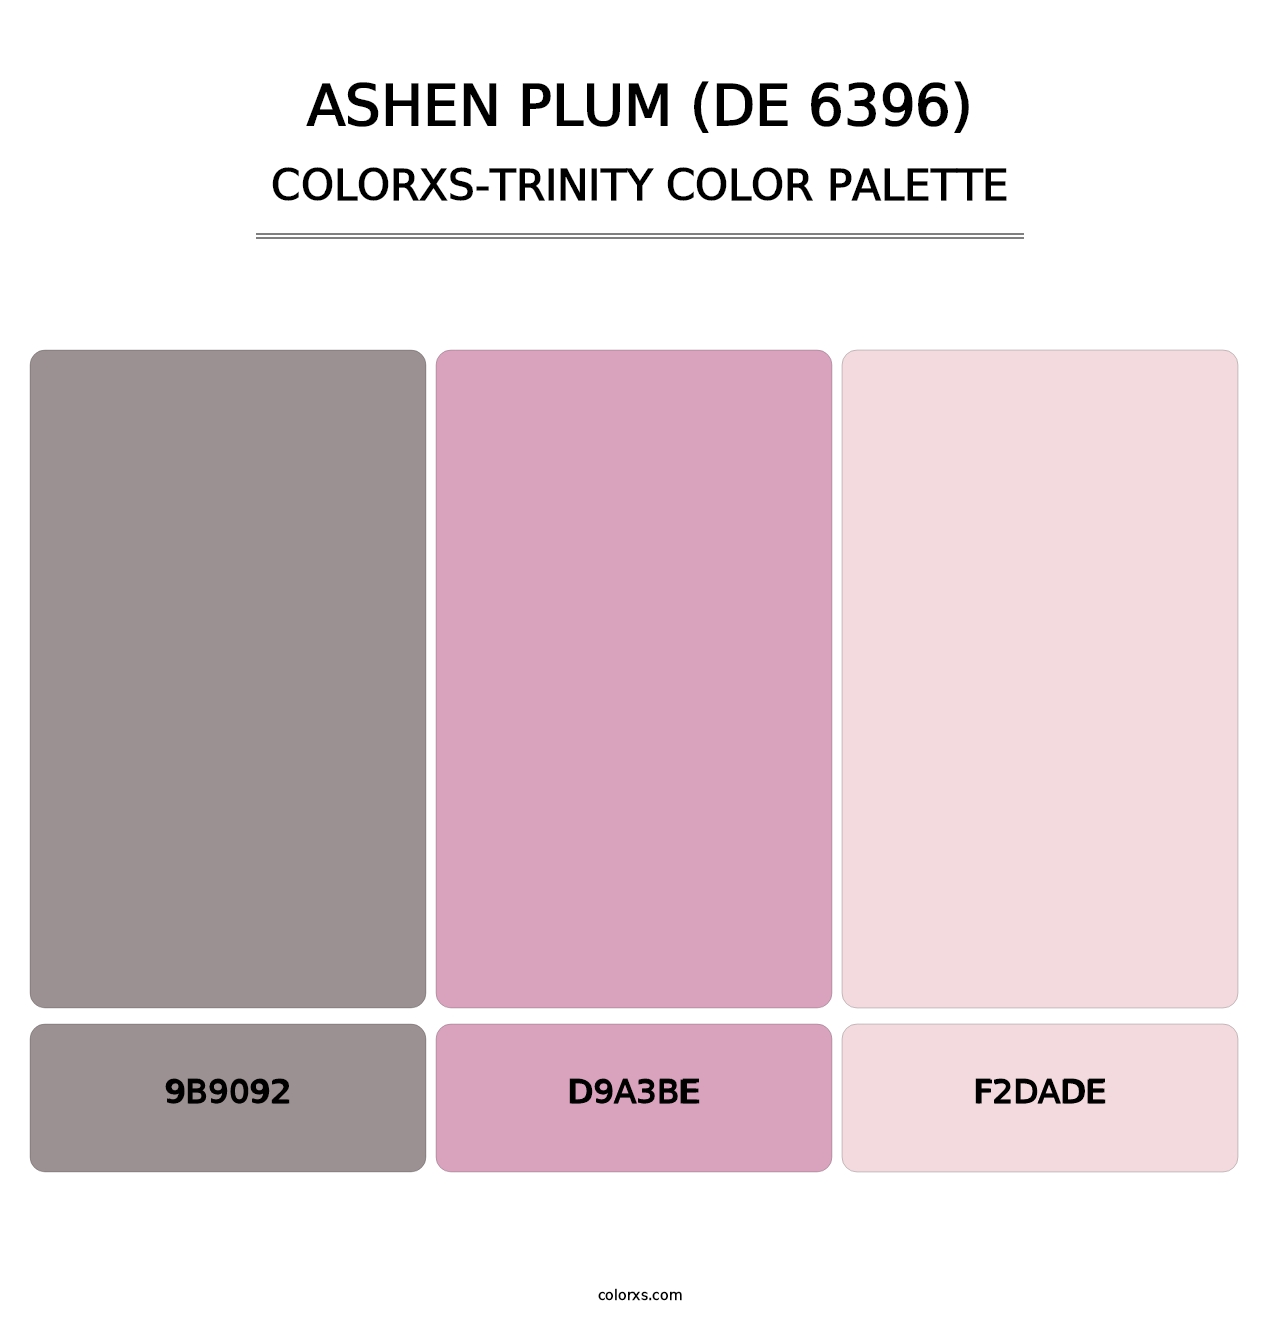 Ashen Plum (DE 6396) - Colorxs Trinity Palette